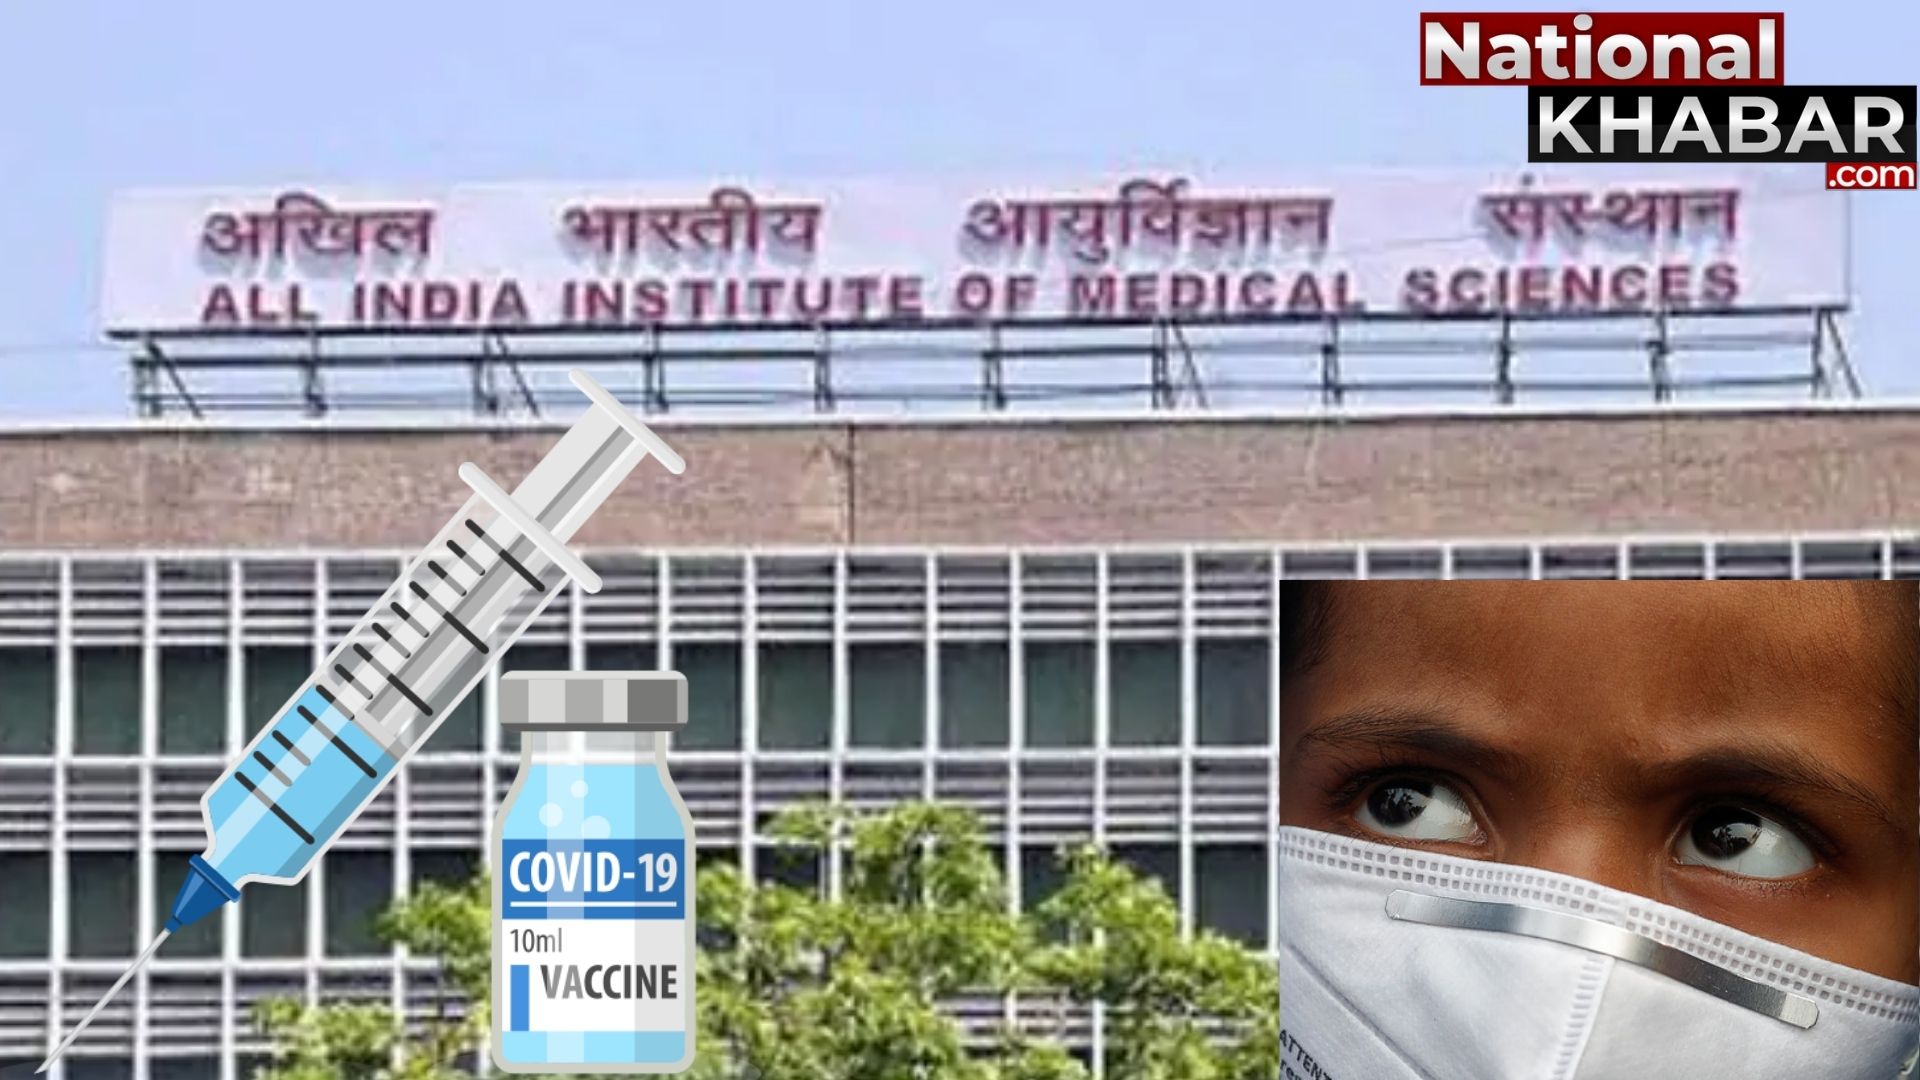 दिल्ली AIIMS में आज से बच्चों पर कोरोना वैक्सीन ट्रायल शुरू, किया जाएगा कोवैक्सीन का परीक्षण